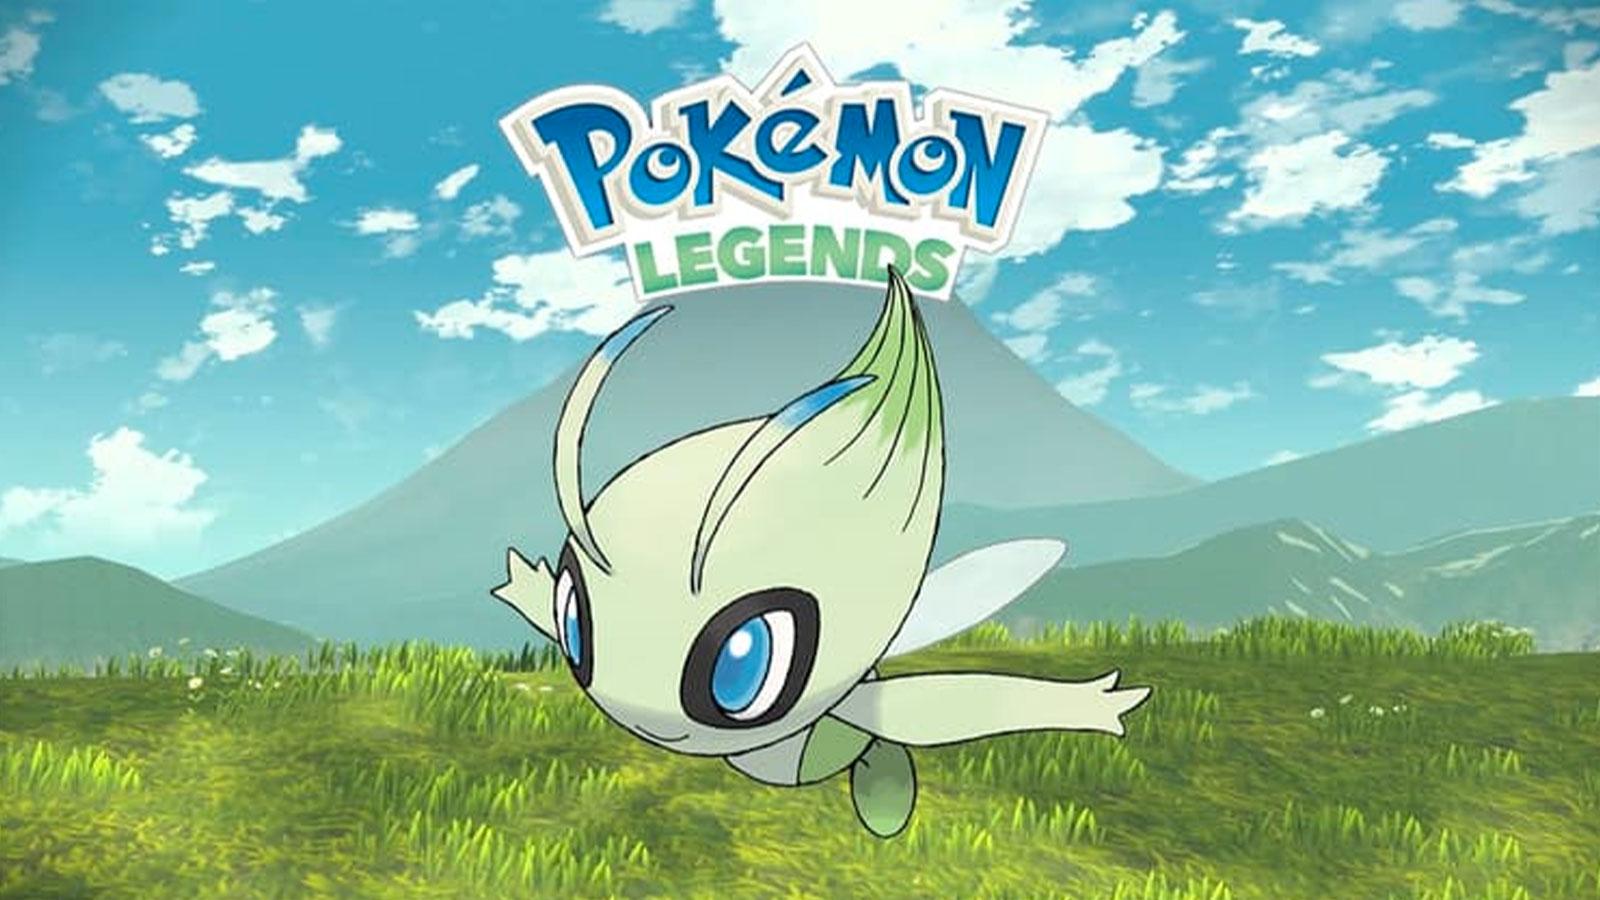 LeeGengar - TEORIA - NOVAS FORMAS PROS STARTERS DE LEGENDS?? Fantasmas, a  escolha dos Pokémon Iniciais de Legends Arceus foi no mínimo diferente.  Algo explica isso? Será que o tema do jogo